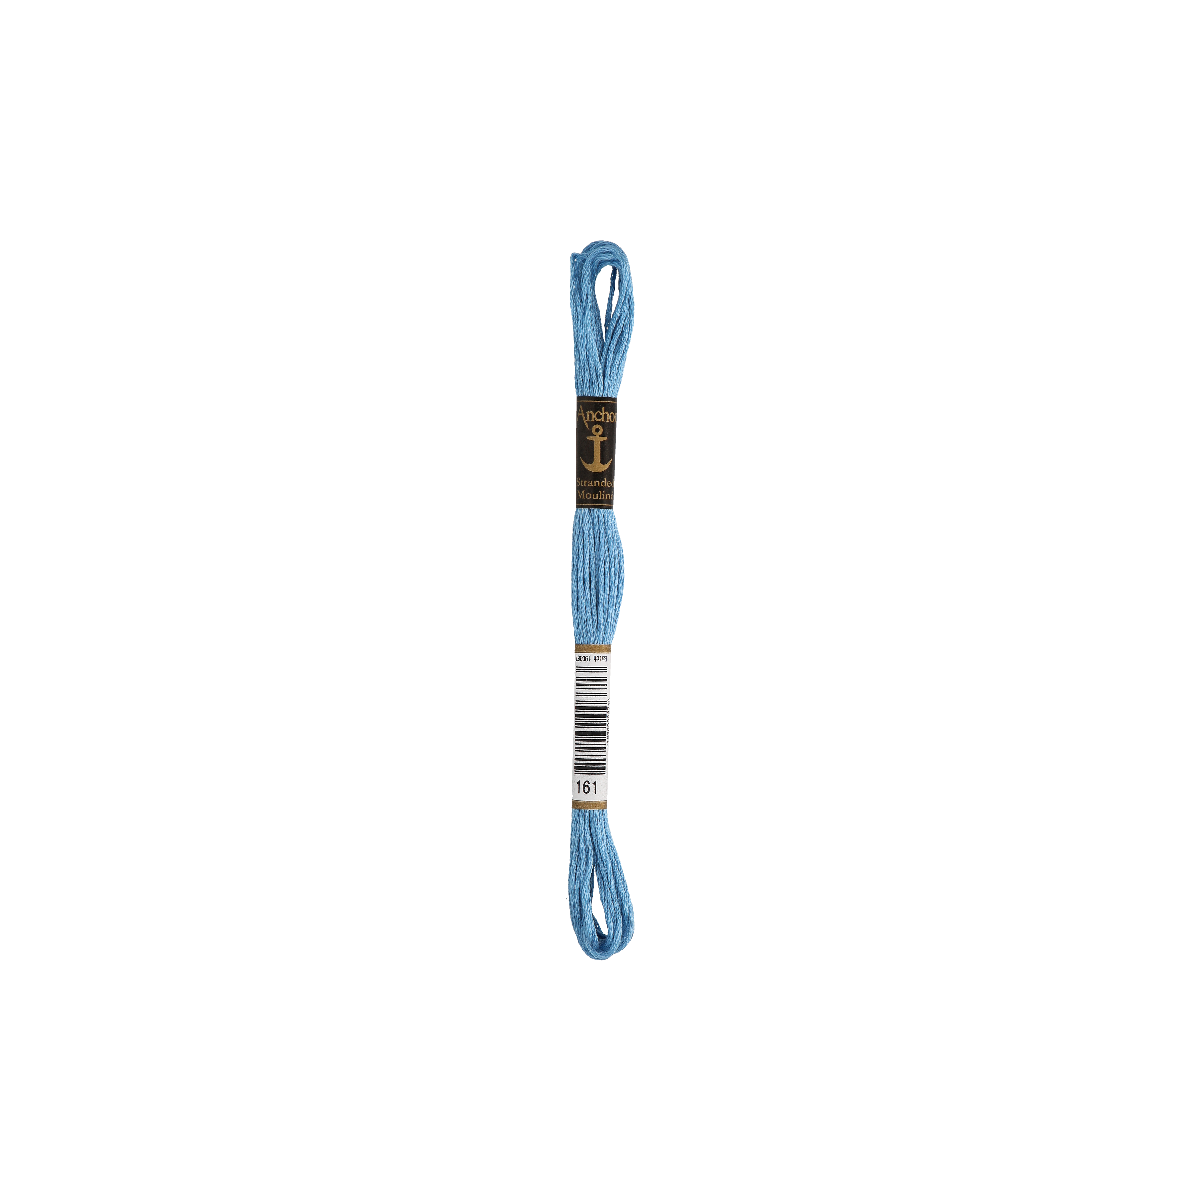 Anchor Sticktwist 8m, blu estivo, cotone, colore 161, 6 fili